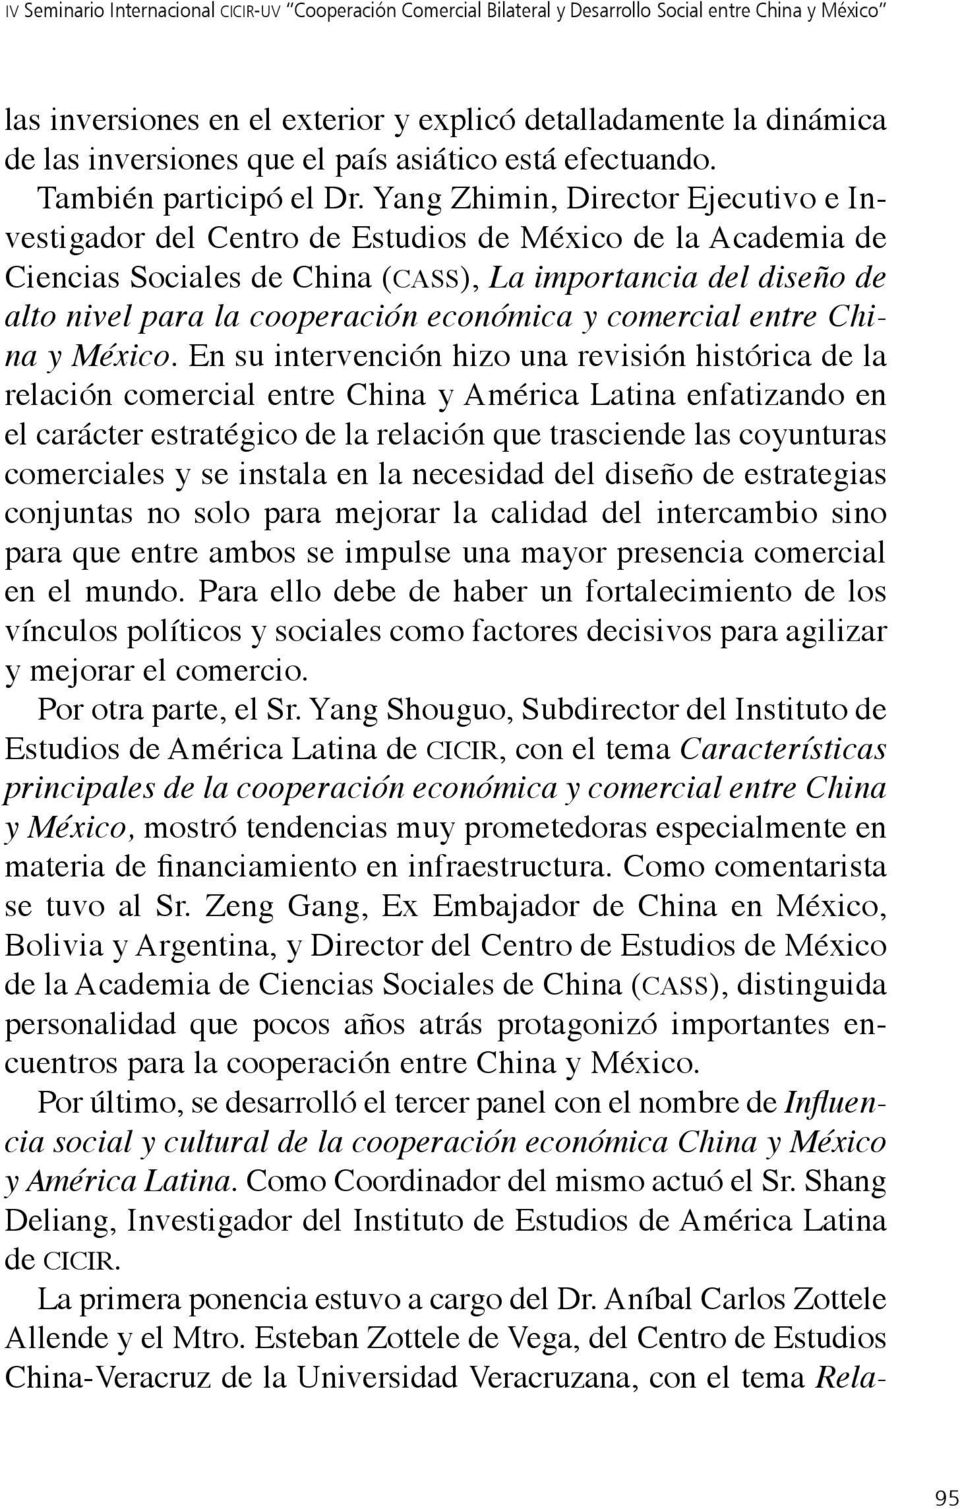 Yang Zhimin, Director Ejecutivo e Investigador del Centro de Estudios de México de la Academia de Ciencias Sociales de China (cass), La importancia del diseño de alto nivel para la cooperación